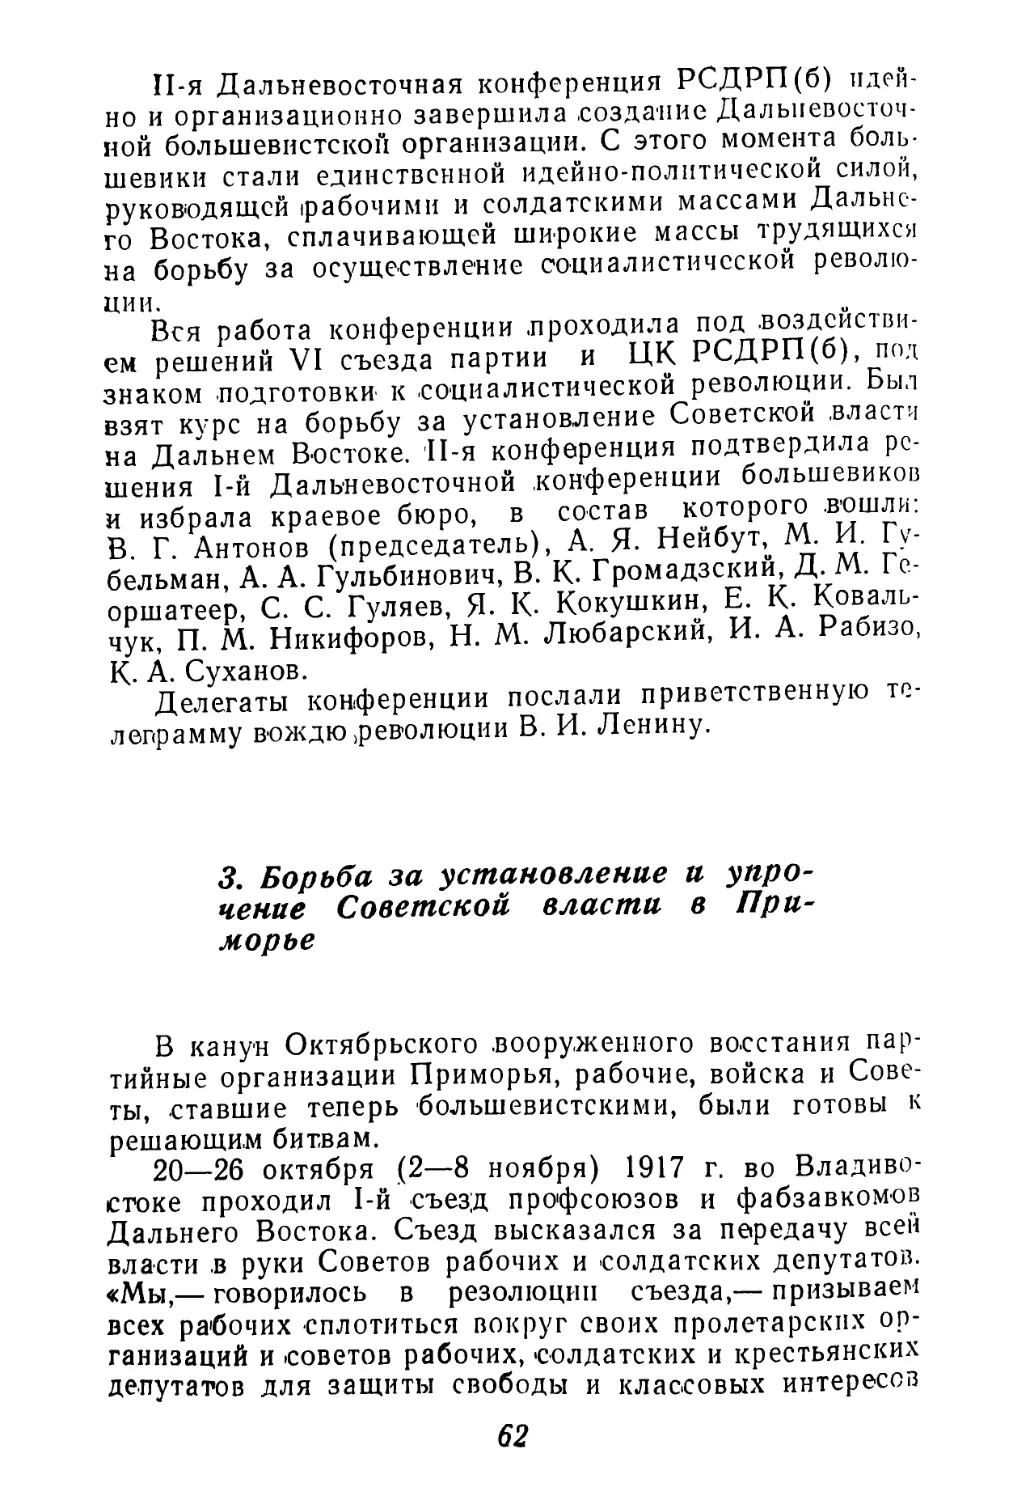 3. Борьба за установление и упрочение Советской власти в Приморье